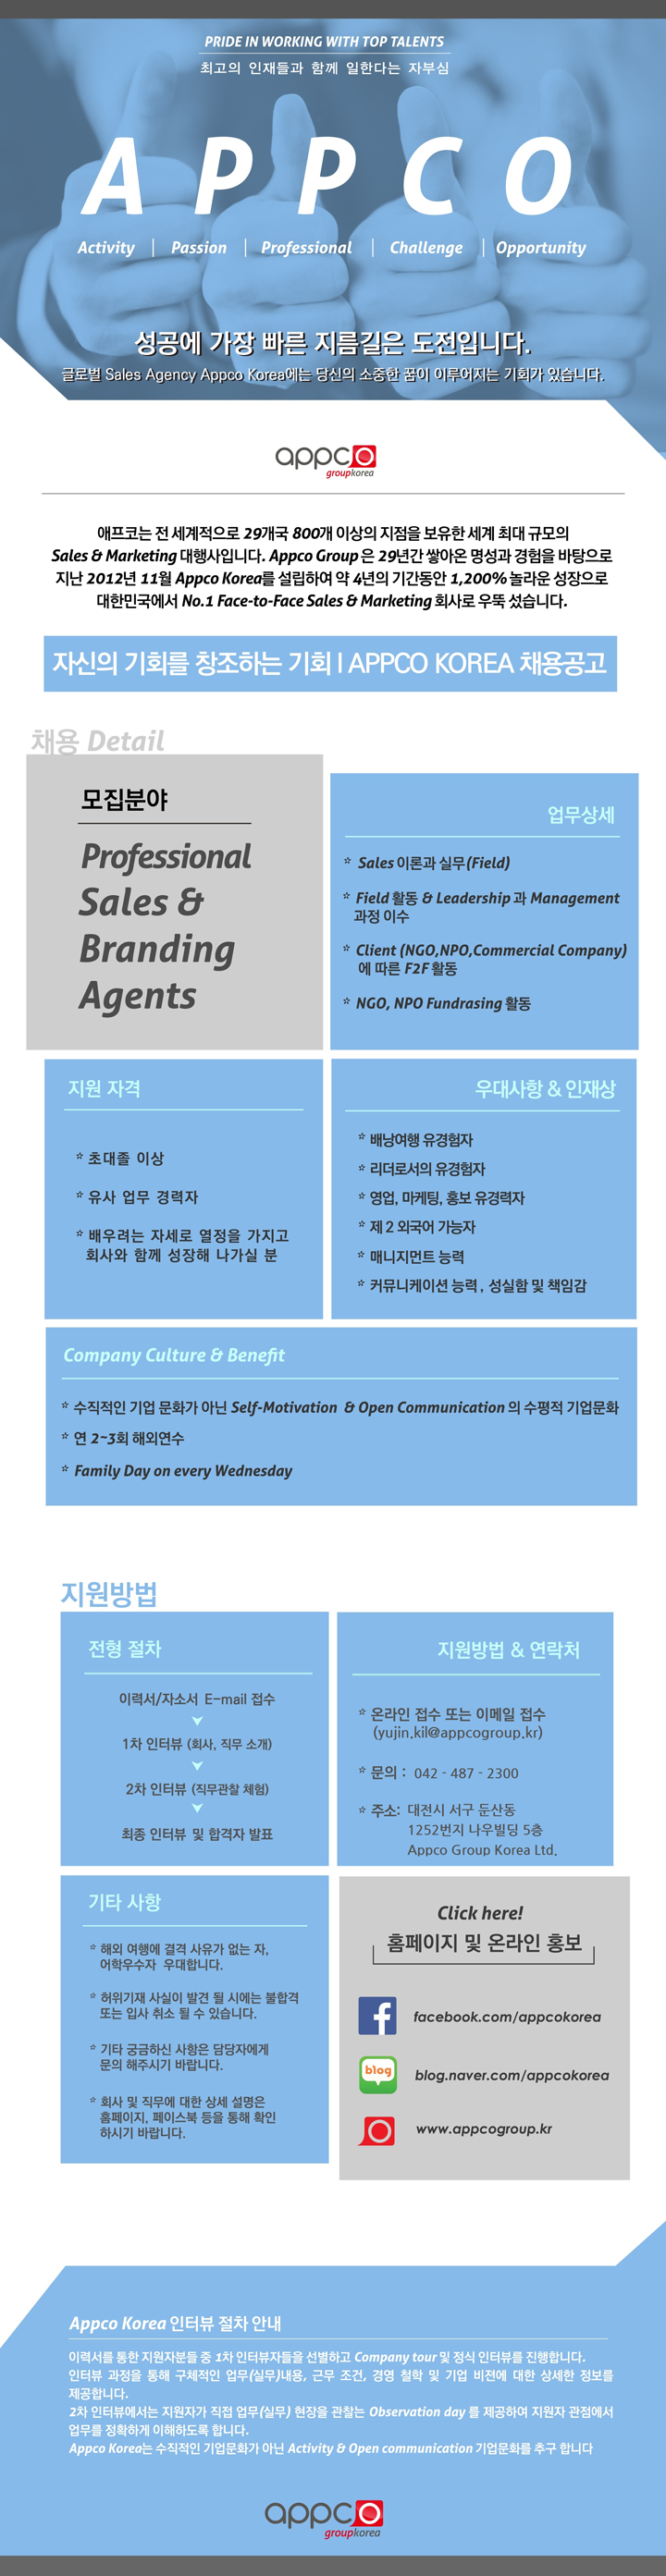 [외국계/대전지점] APPCO KOREA Professional Sales & Branding Agents 모집